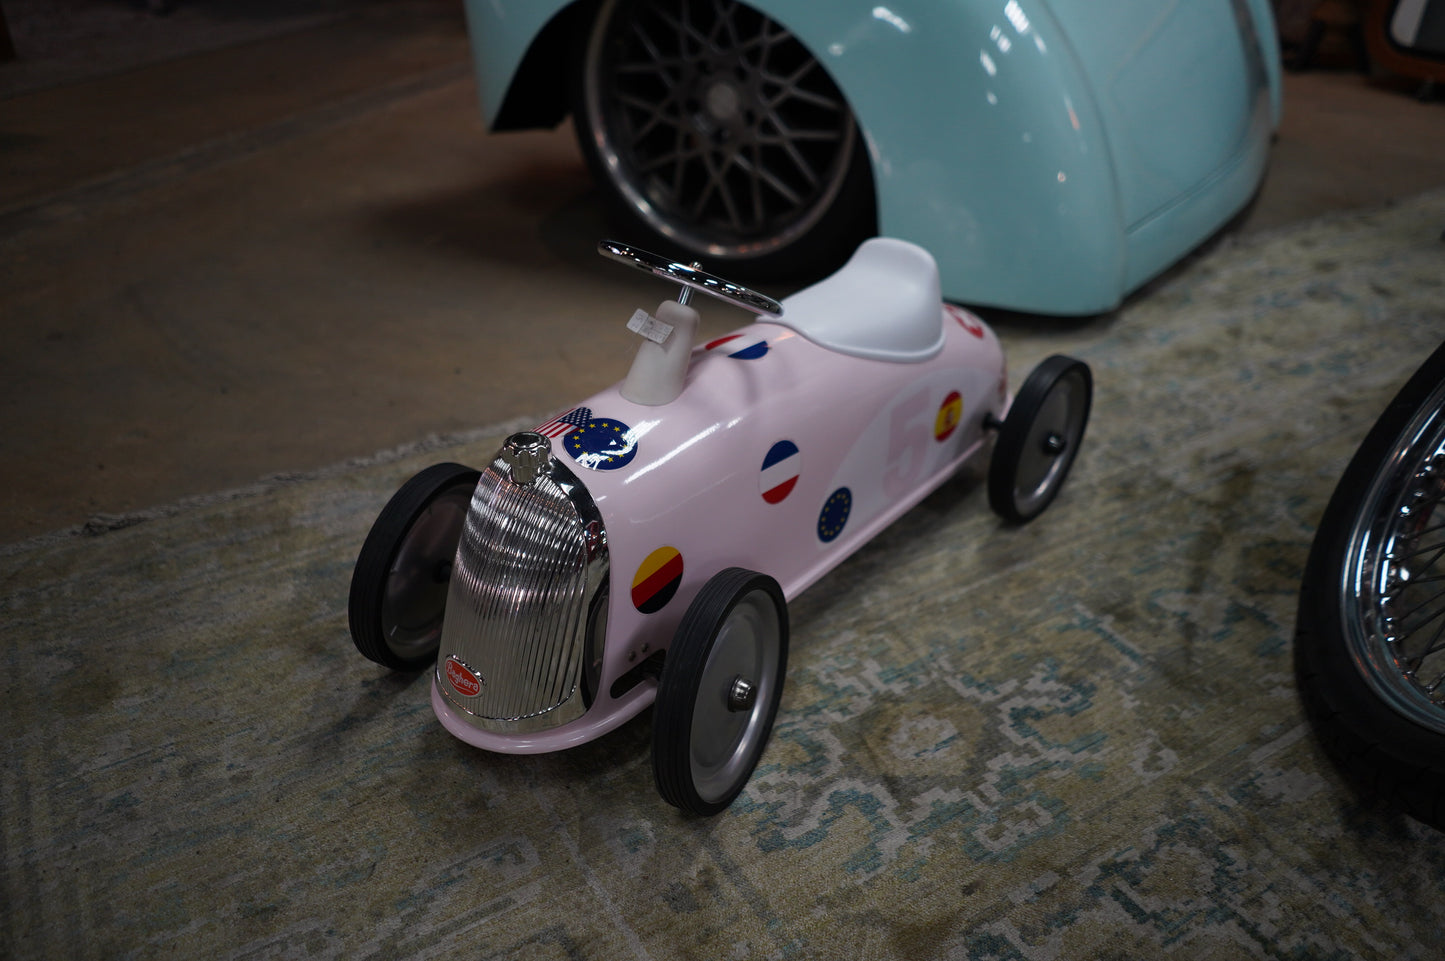 Pink Toy Car